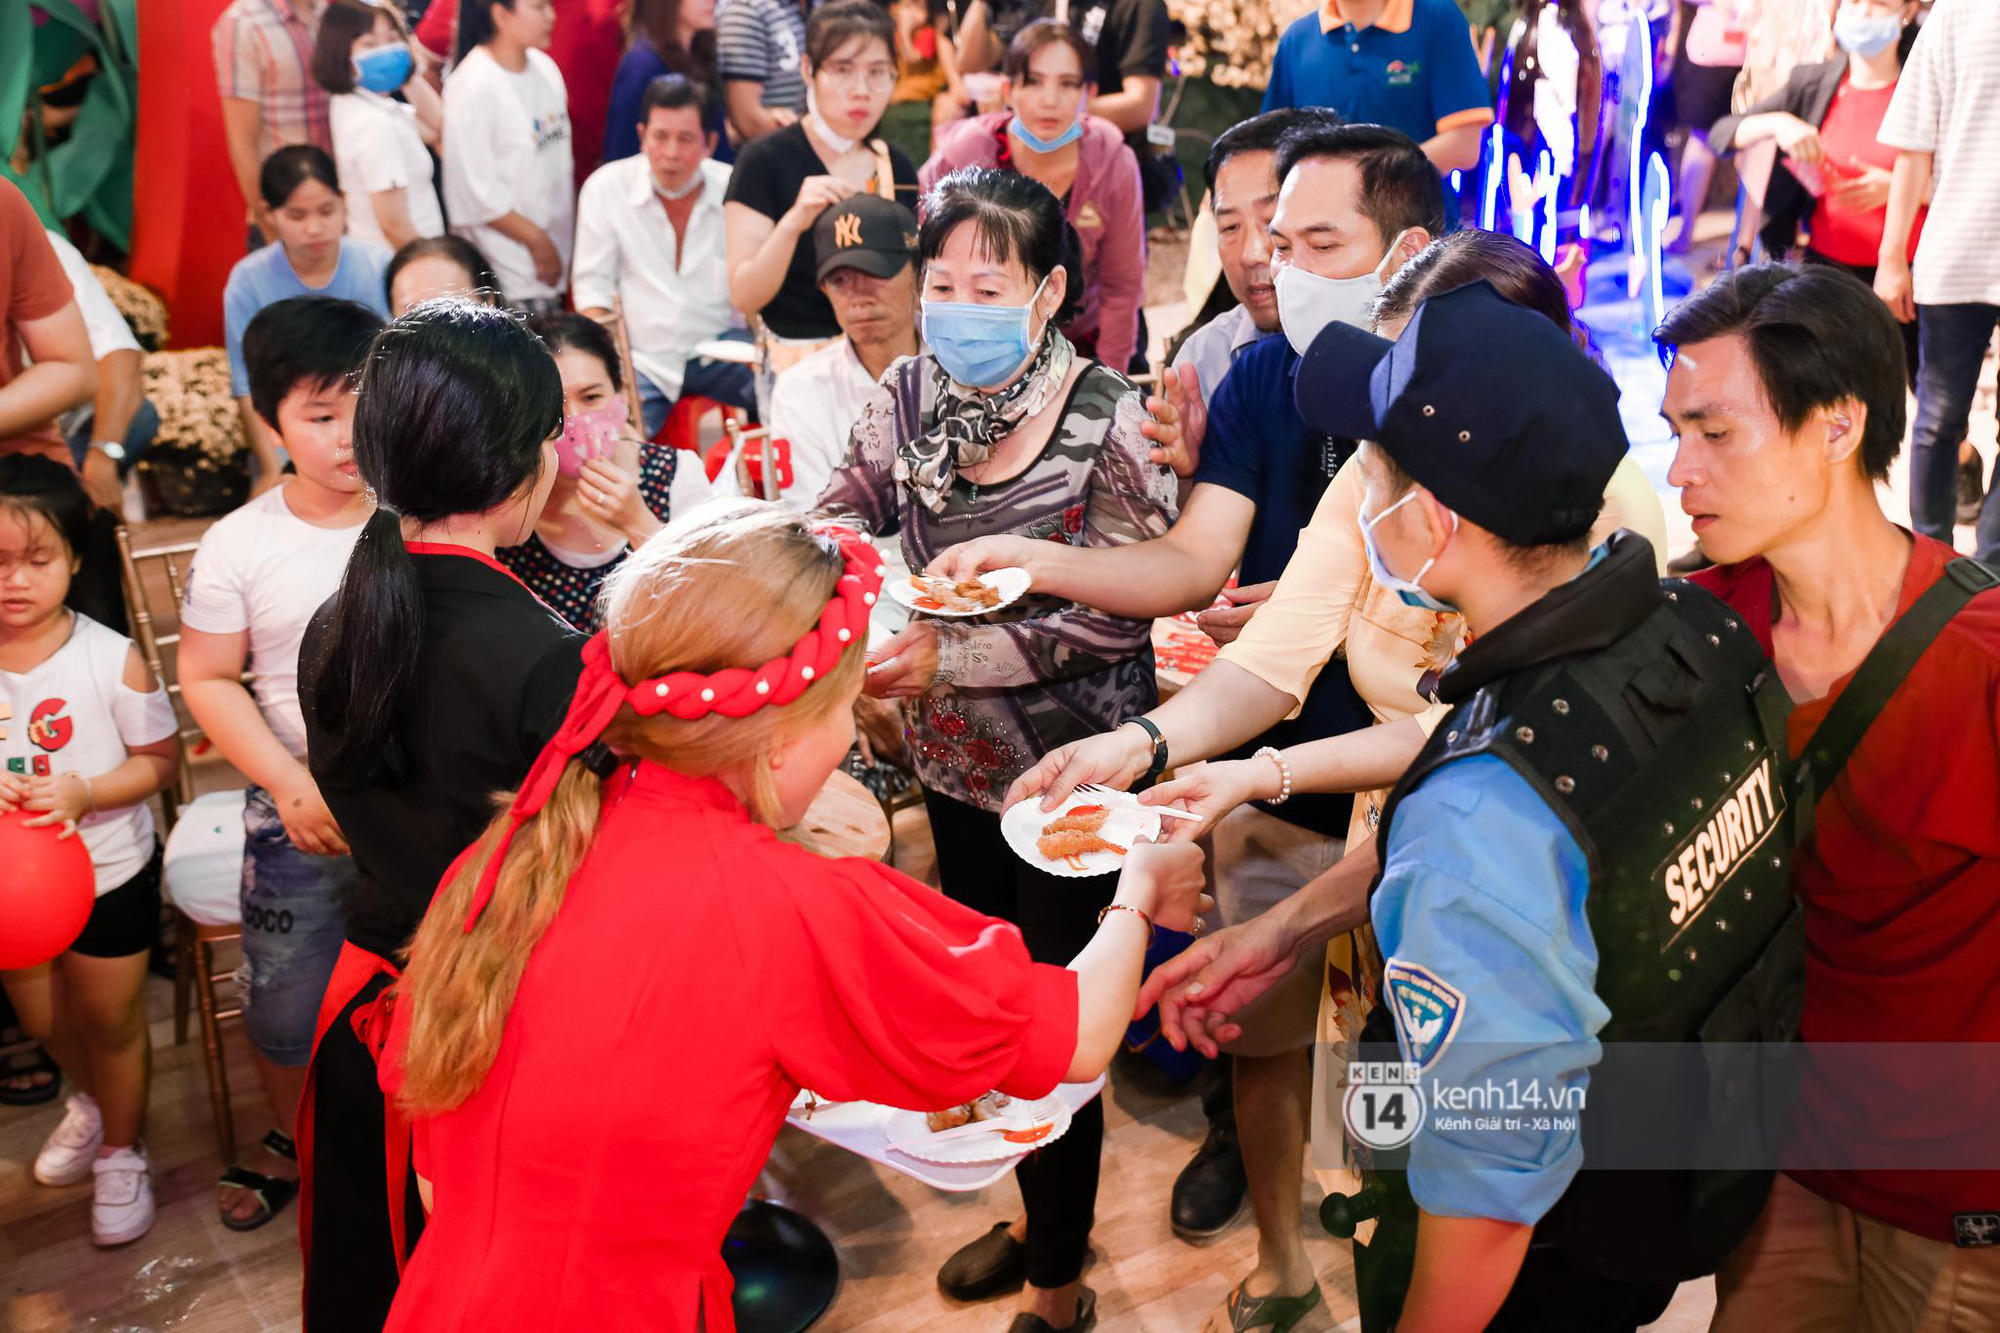 Người dân Sài Gòn đại náo Lễ hội Tết Việt và thưởng thức bữa tiệc ẩm thực bùng nổ nhất mùa Tết này - Ảnh 11.